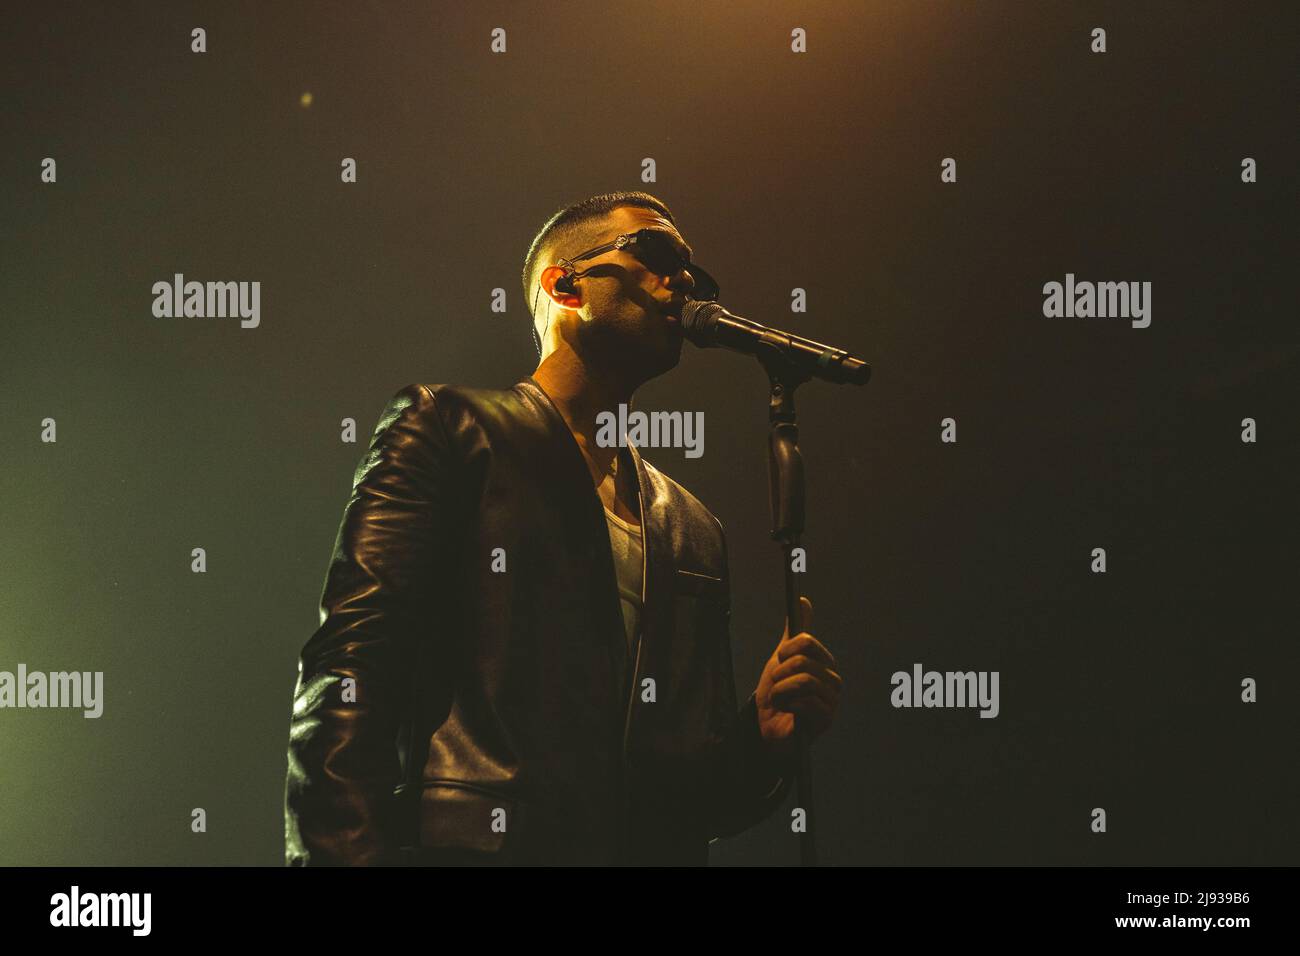 18/05/2022 - Cantante italiano MAHMOOD tocando en vivo en Alcatraz Milano, Italia Foto de stock